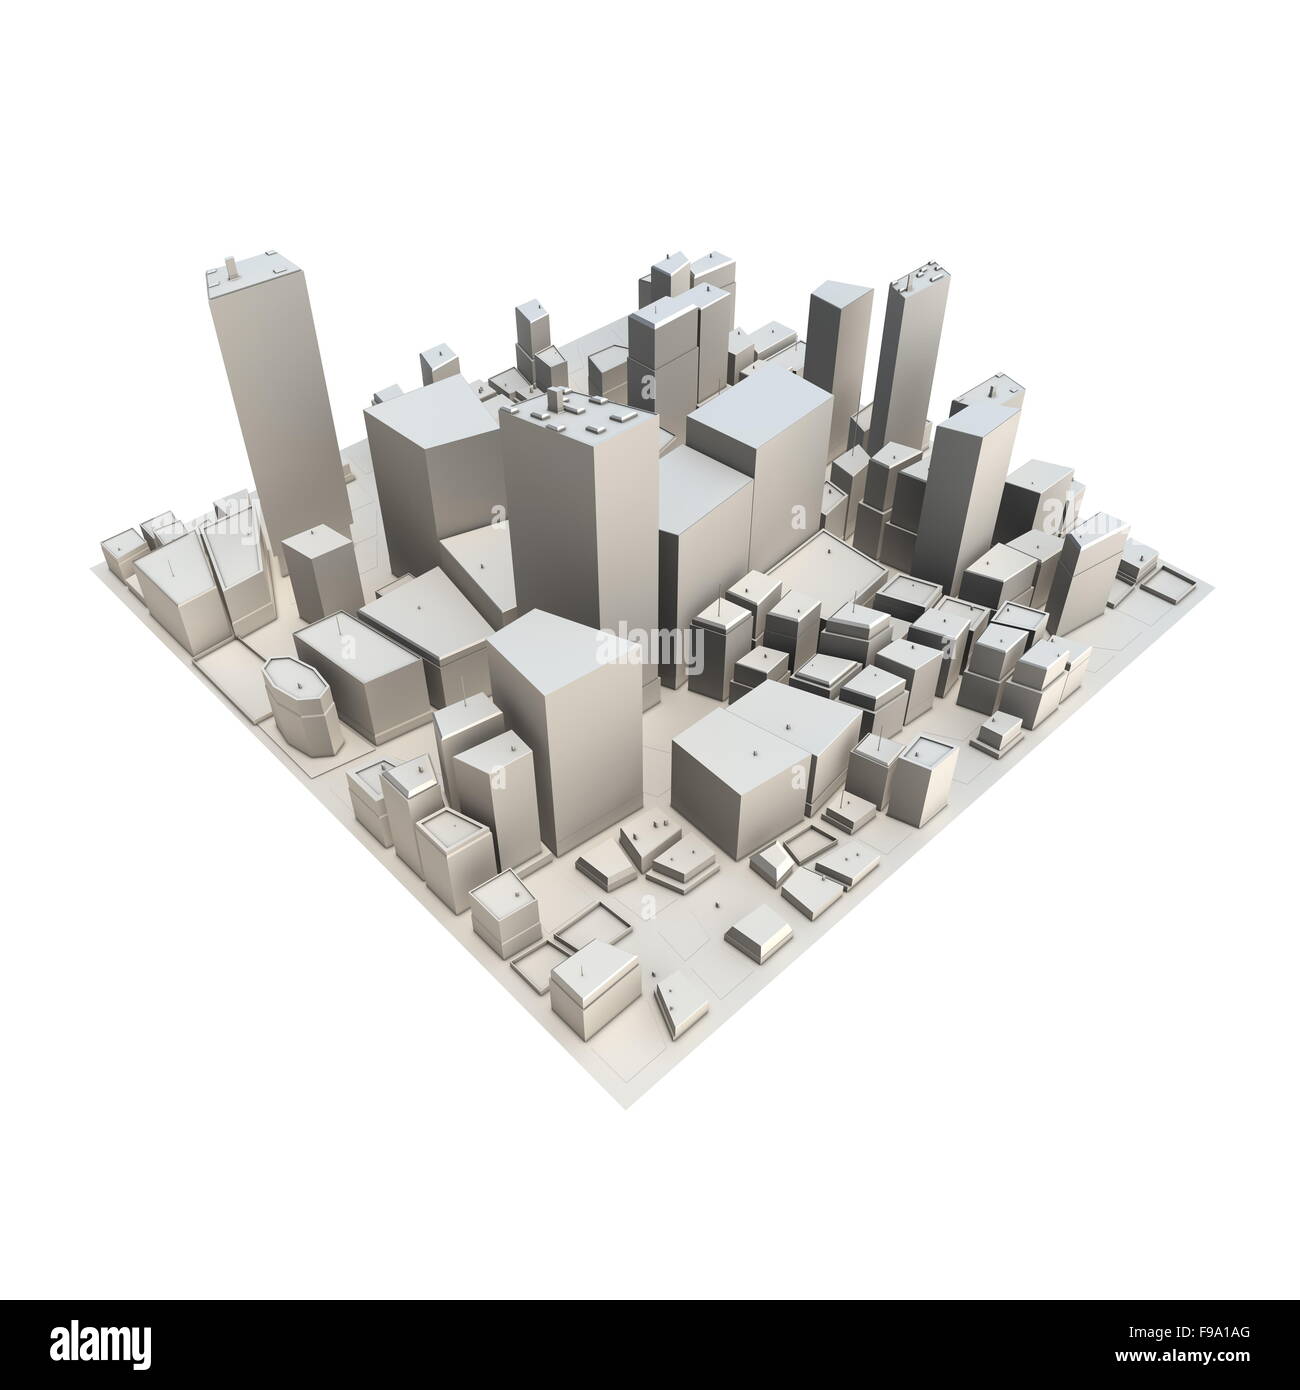 Introducir 36+ imagen modelo 3d ciudad